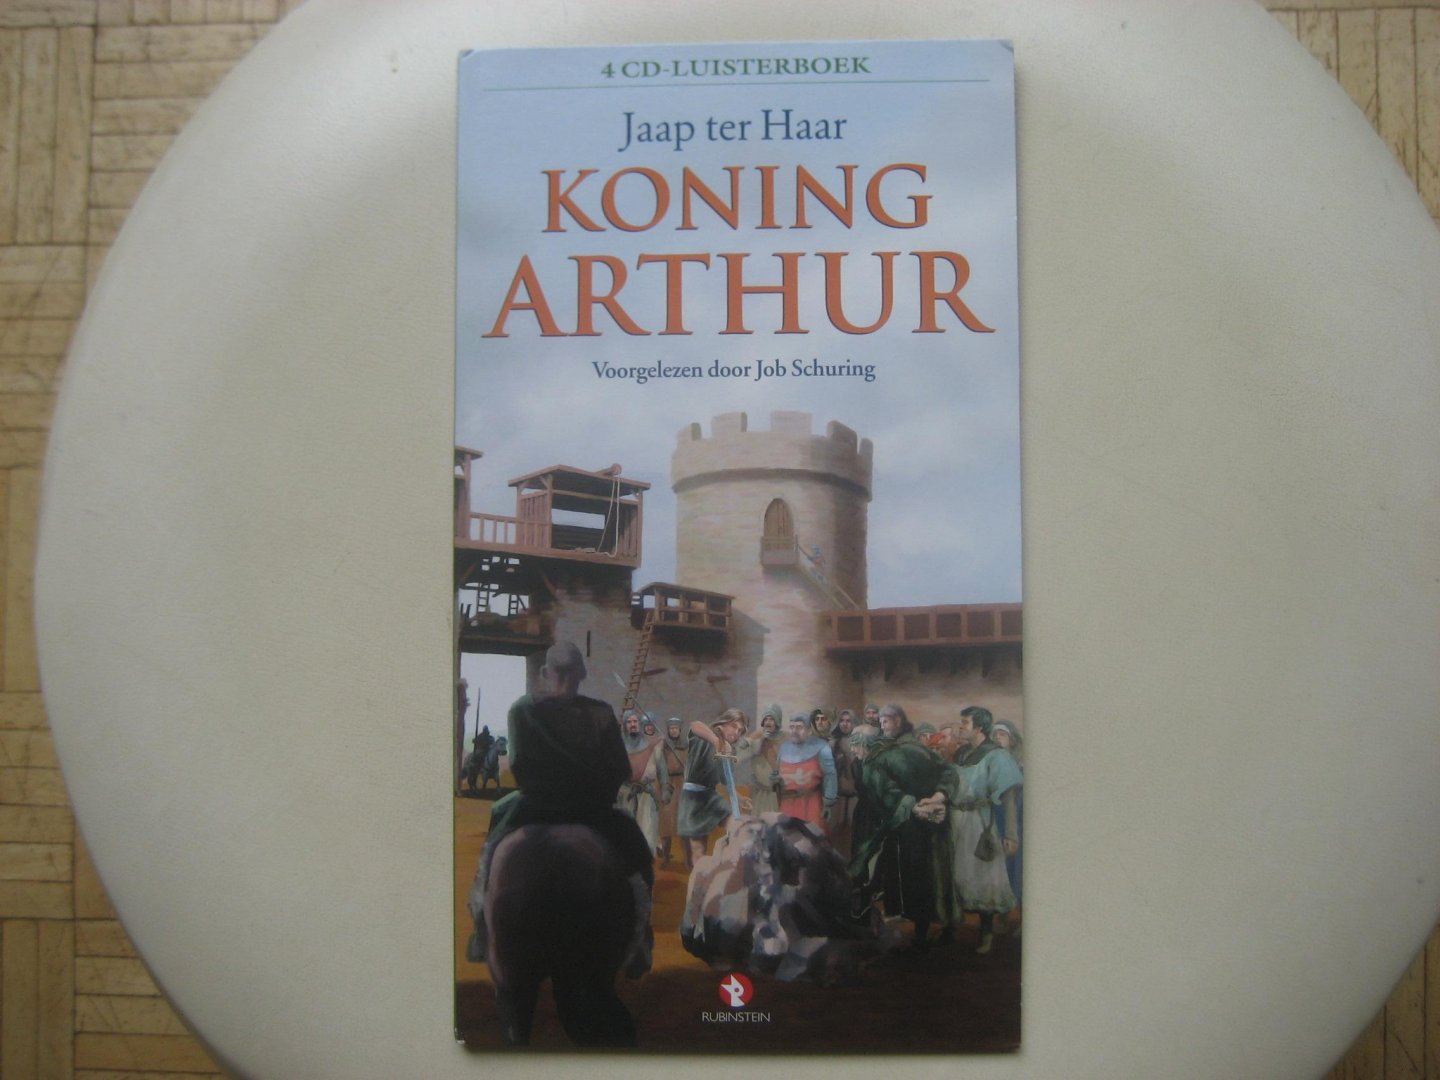 Jaap ter Haar - Koning Arthur  / 4 CD luisterboek voorgelezen door Job Schuring